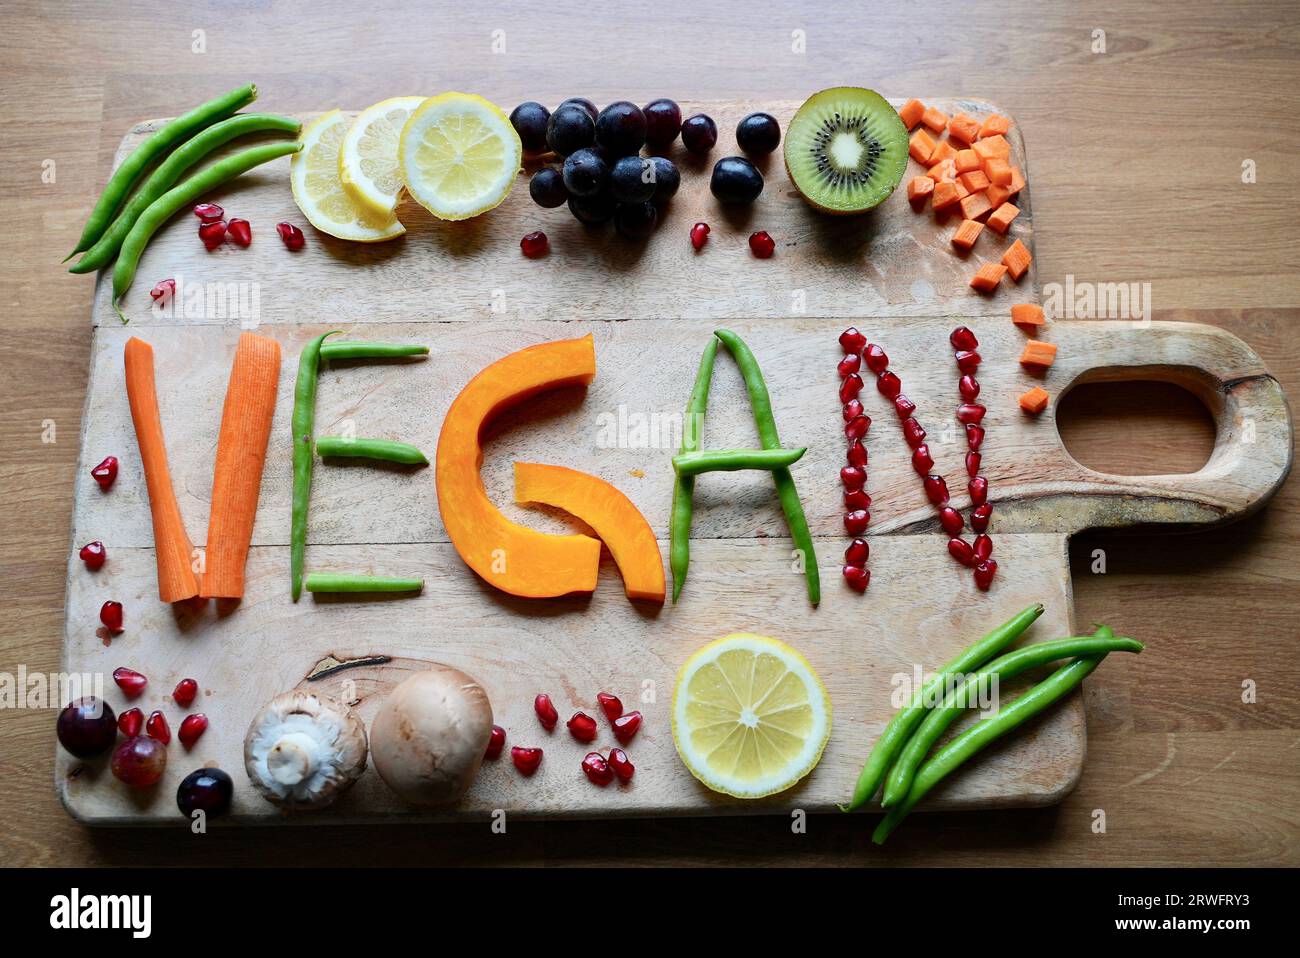 Vegane Ernährung enthält viel Obst, Gemüse und rohkost Stock Photo